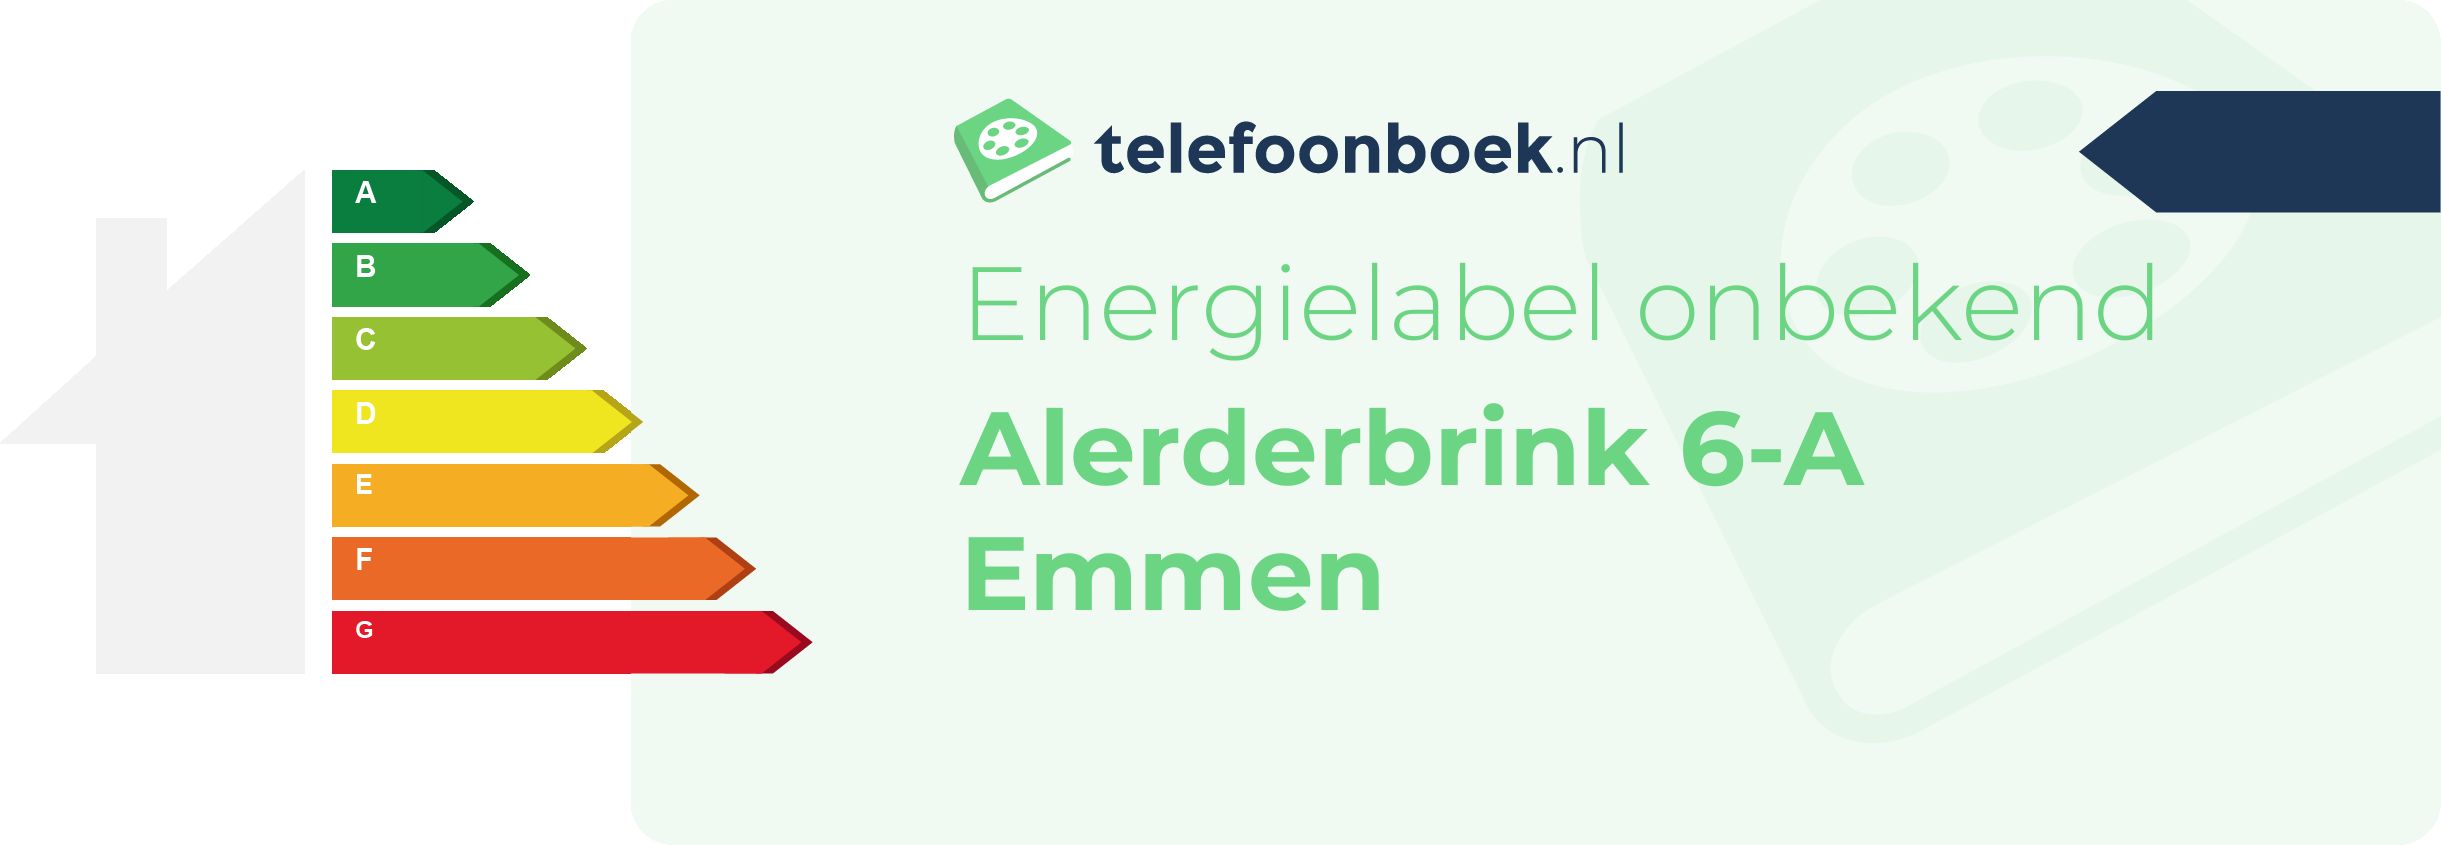 Energielabel Alerderbrink 6-A Emmen